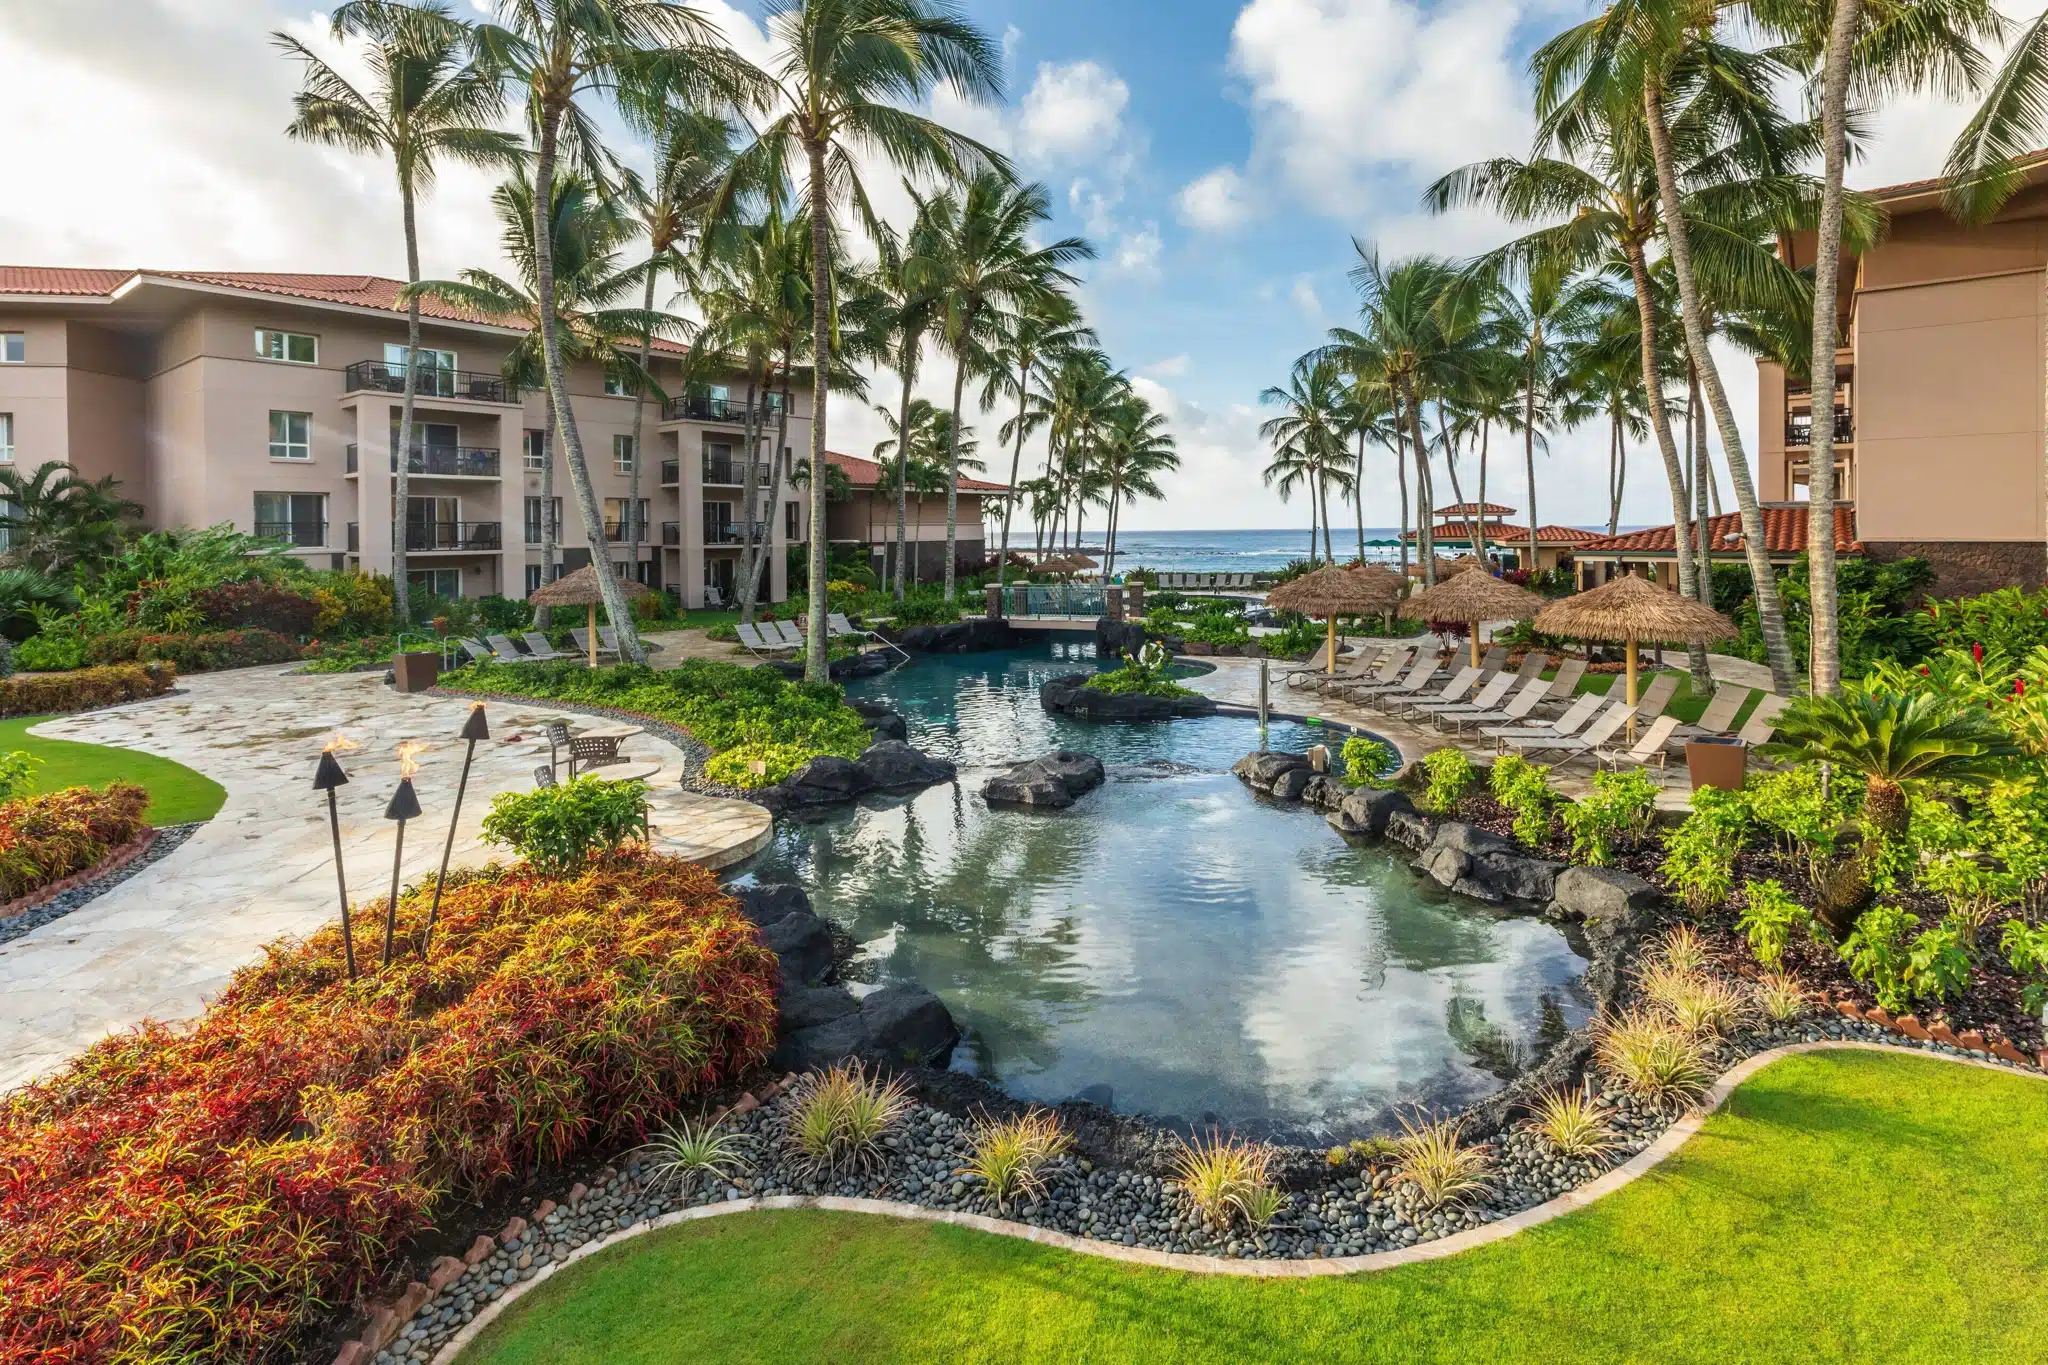 Marriott's Waiohai Beach Club is a Hotel located in the city of Koloa on Kauai, Hawaii